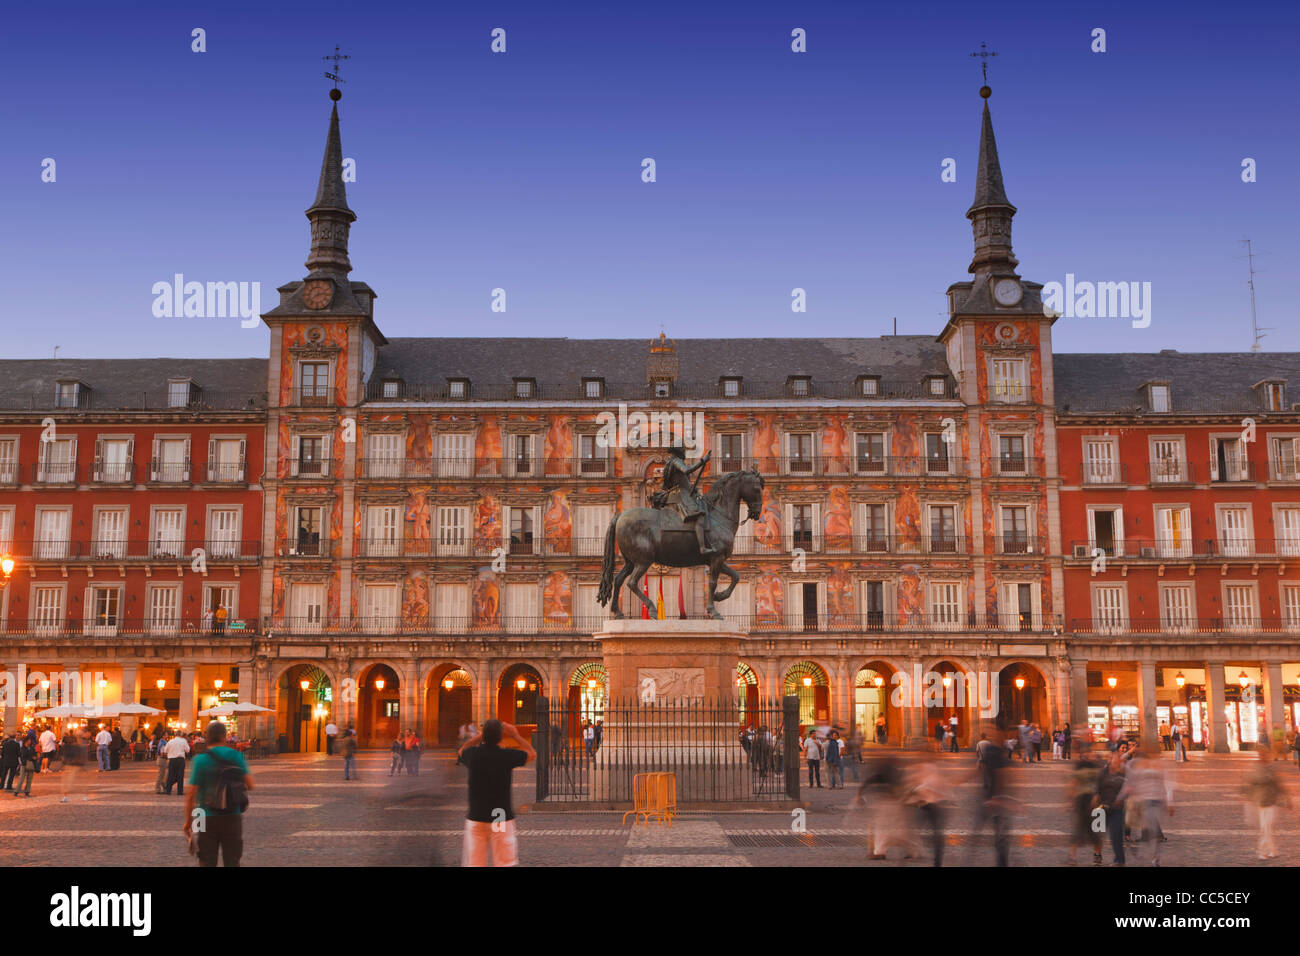 Madrid, Espagne. Plaza Mayor au crépuscule. Statue équestre du roi Felipe III Banque D'Images